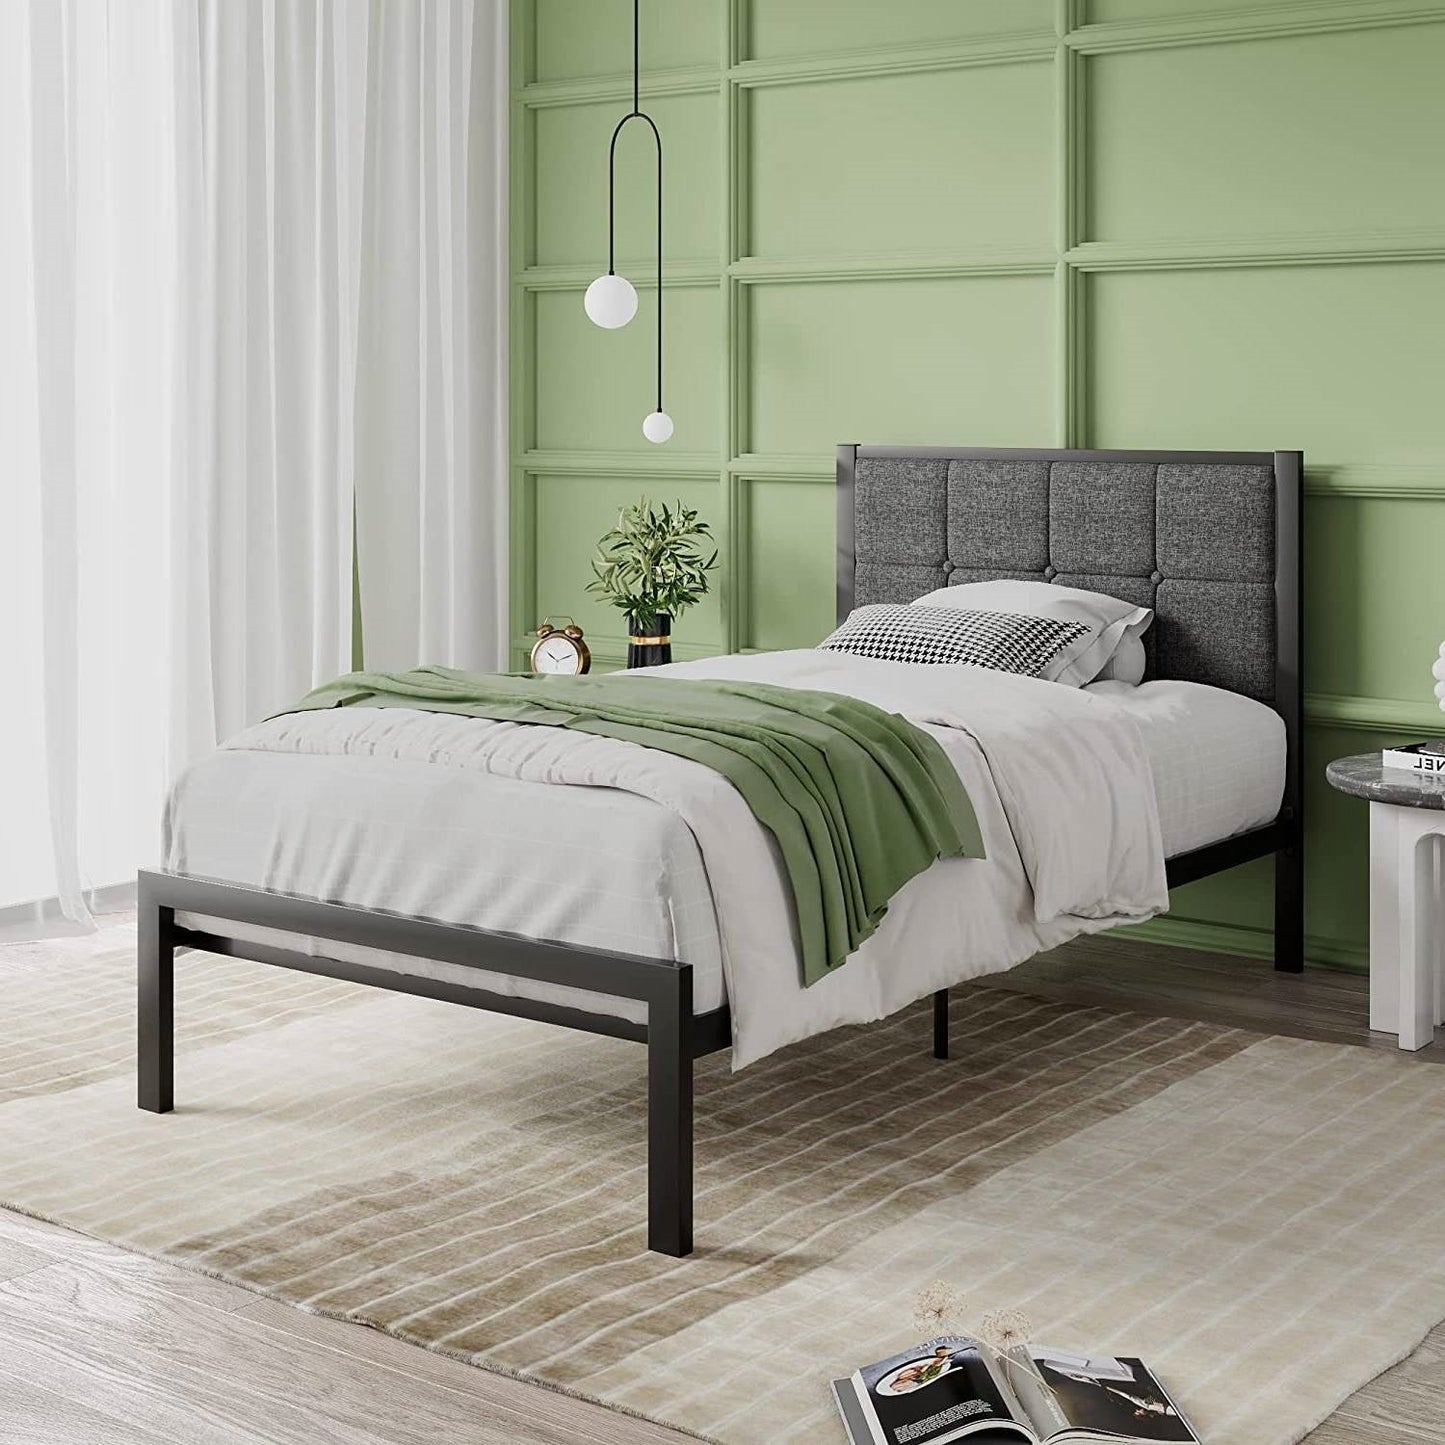 Bedroom > Bed Frames > Platform Beds - Twin Metal Platform Bed Frame With Gray Button Tufted Upholstered Headboard